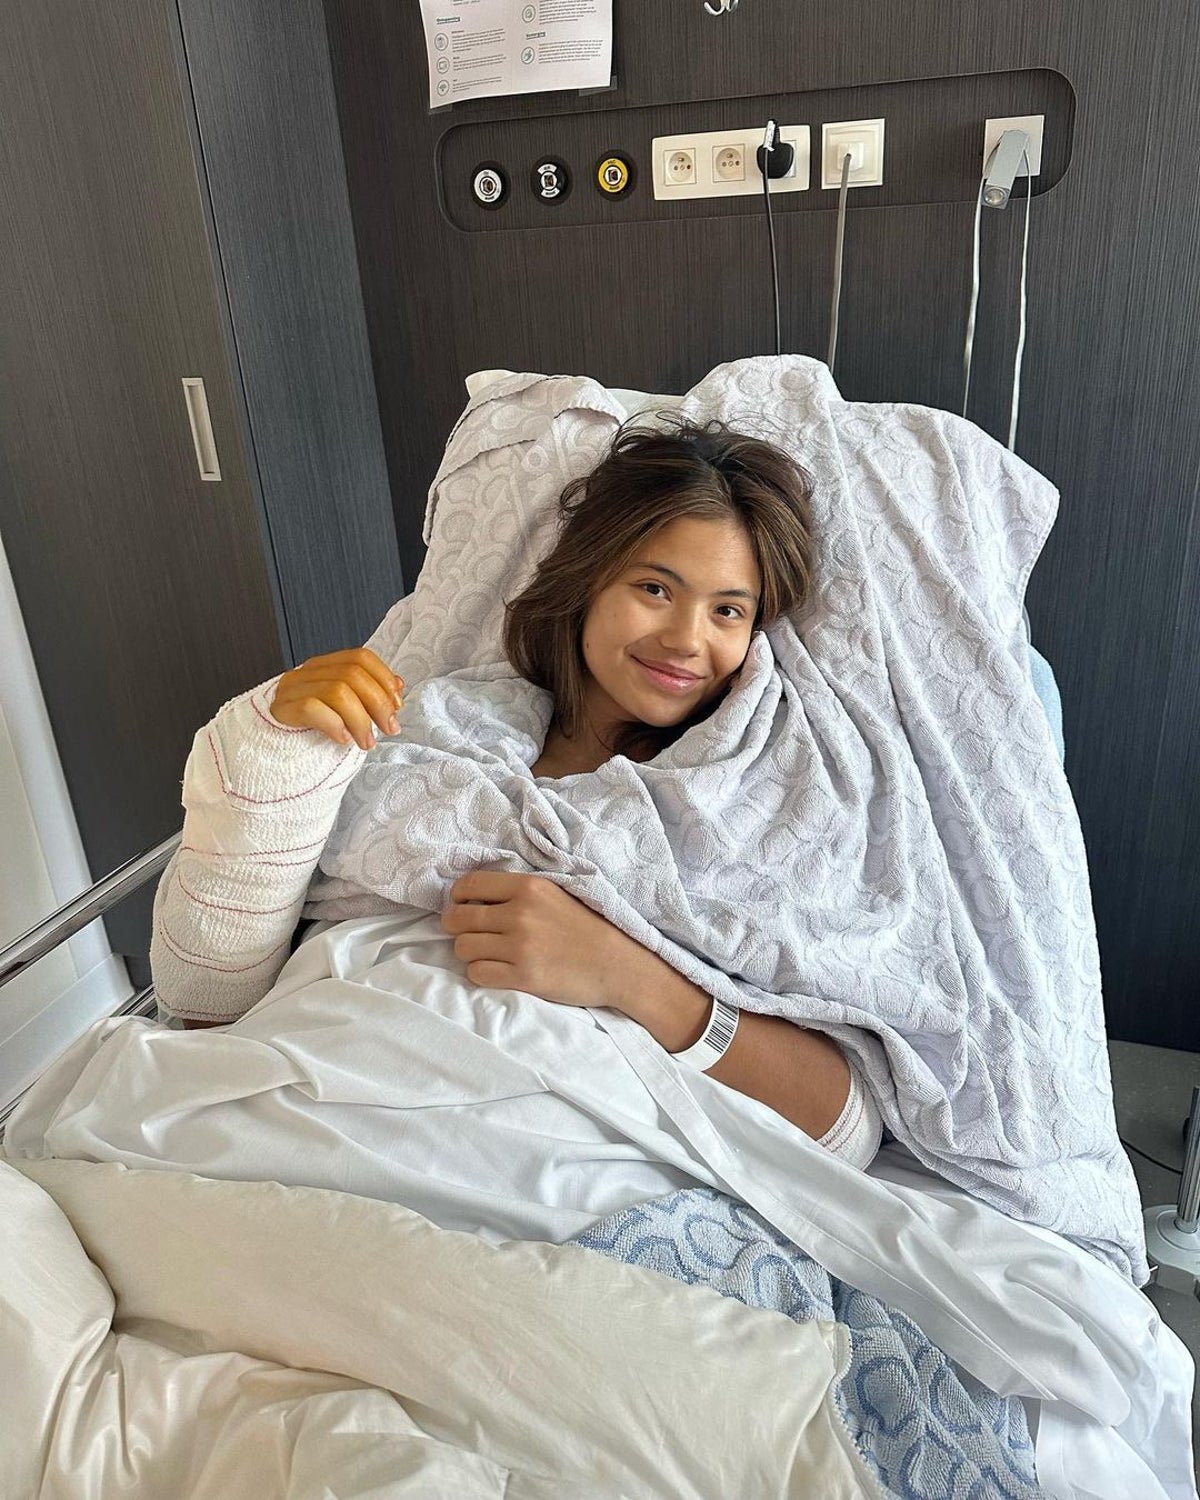 Emma Raducanu to miss Wimbledon after undergoing surgery